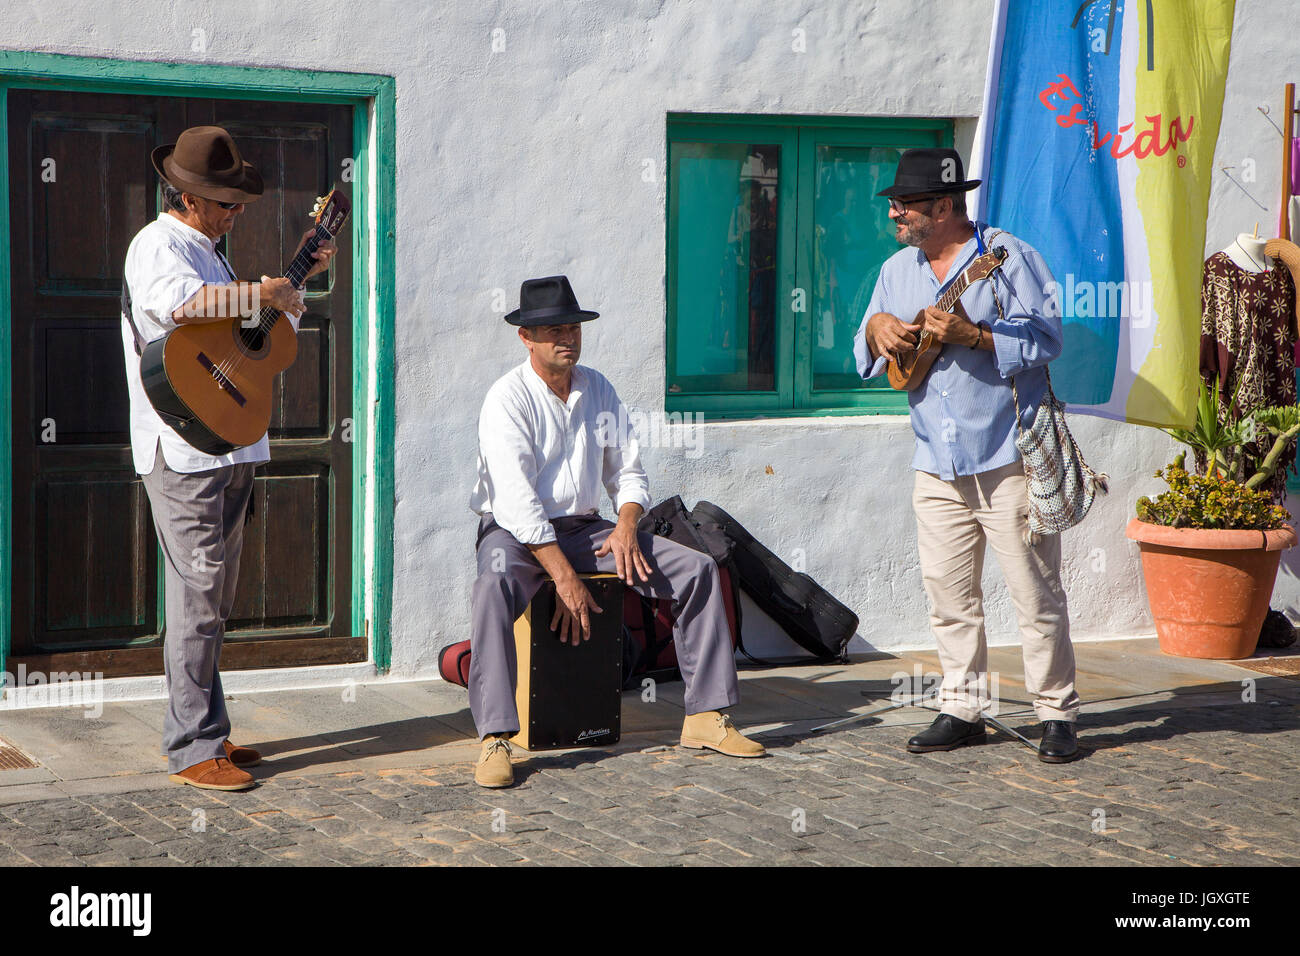 Strassenmusiker auf dem woechentlichen Sonntagsmarkt in Teguise, Lanzarote, Kanarische Inseln, Europa | Street musicans at weekly sunday market, Tegui Stock Photo